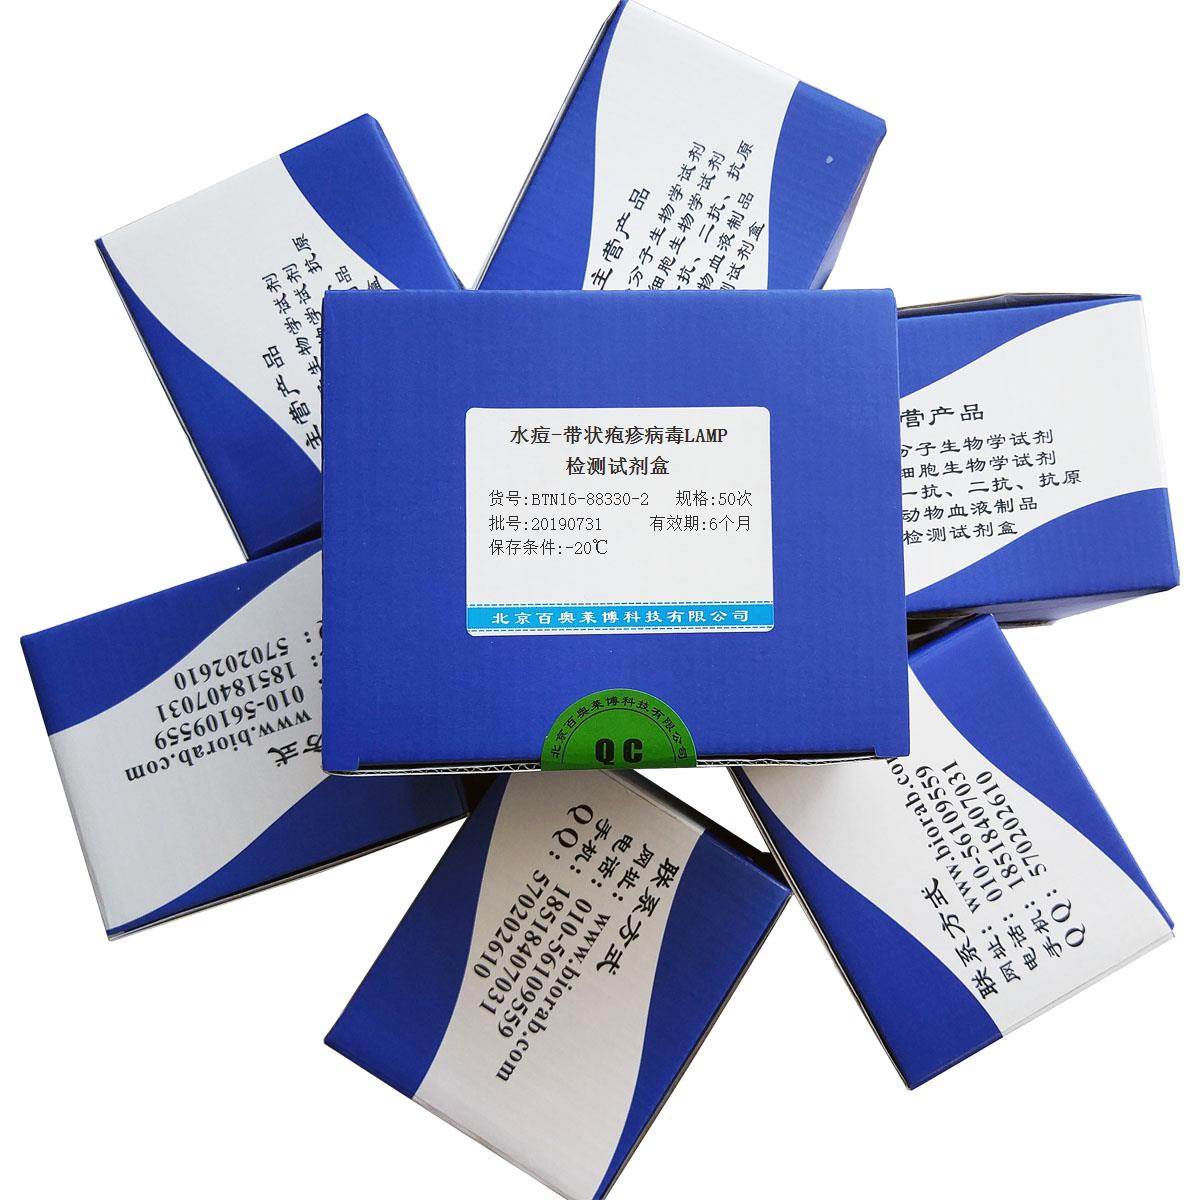 水痘-带状疱疹病毒LAMP检测试剂盒优惠促销